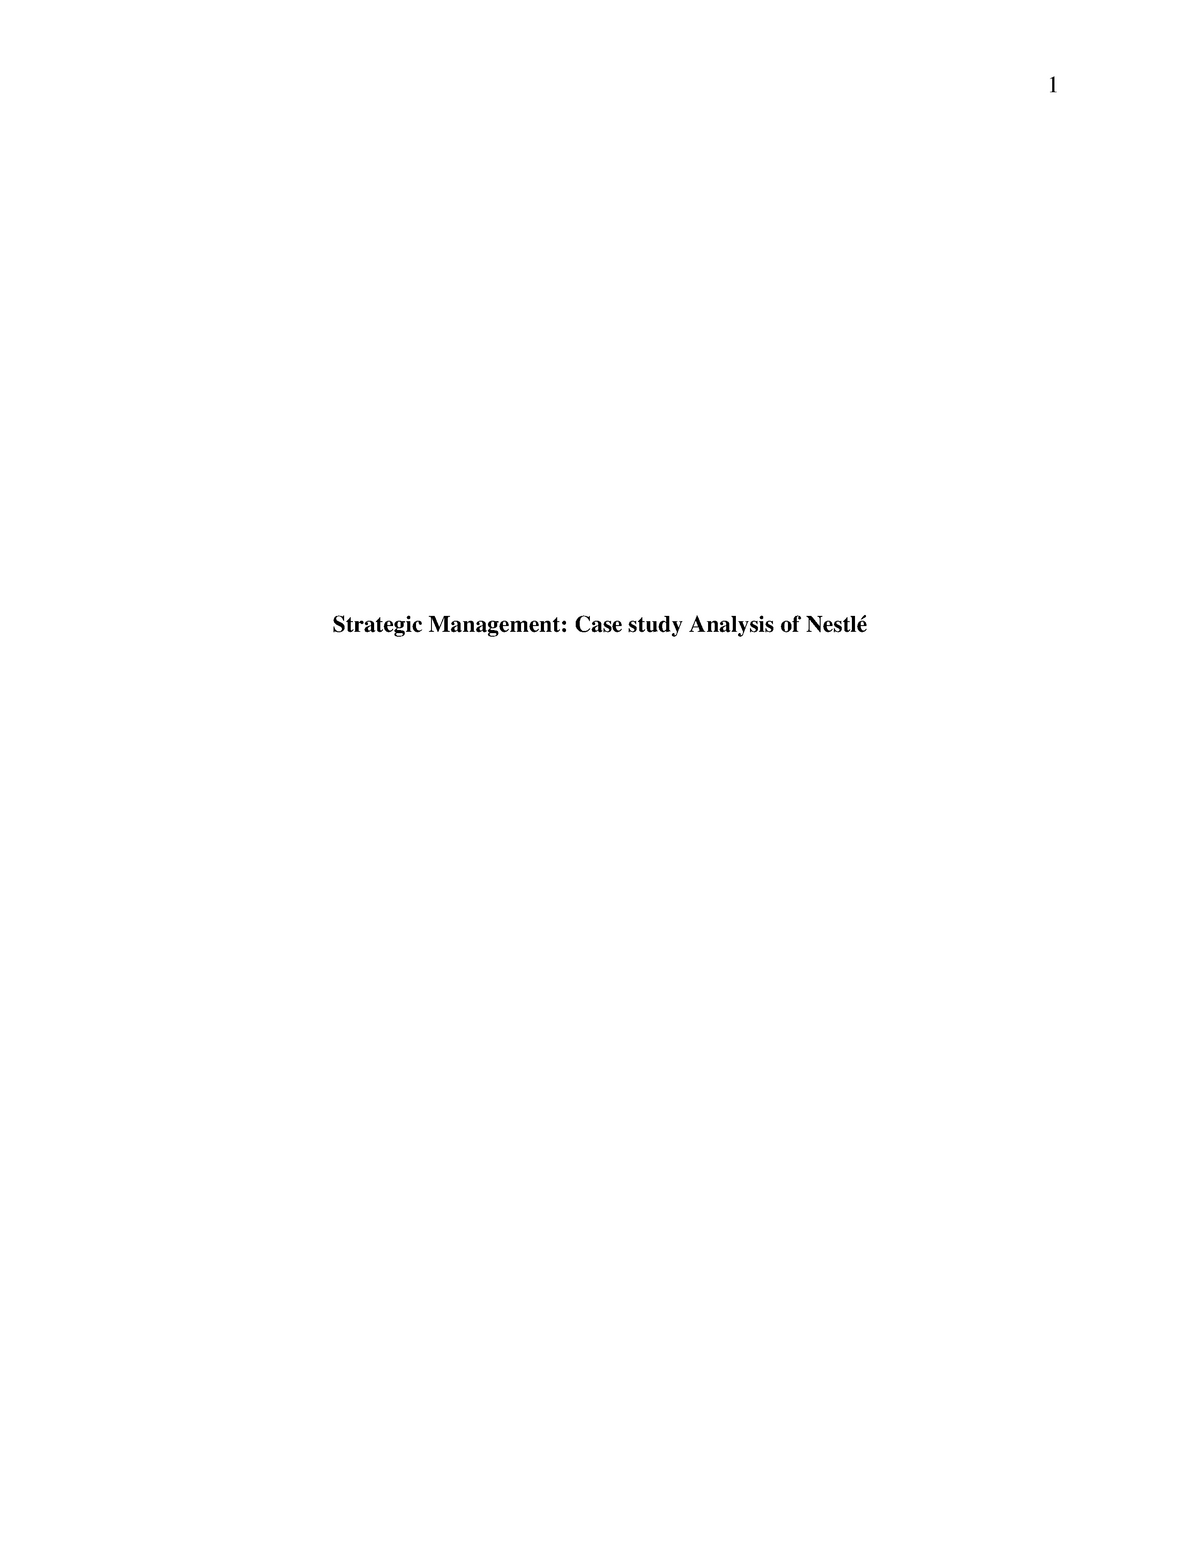 strategic management case study analysis of nestle